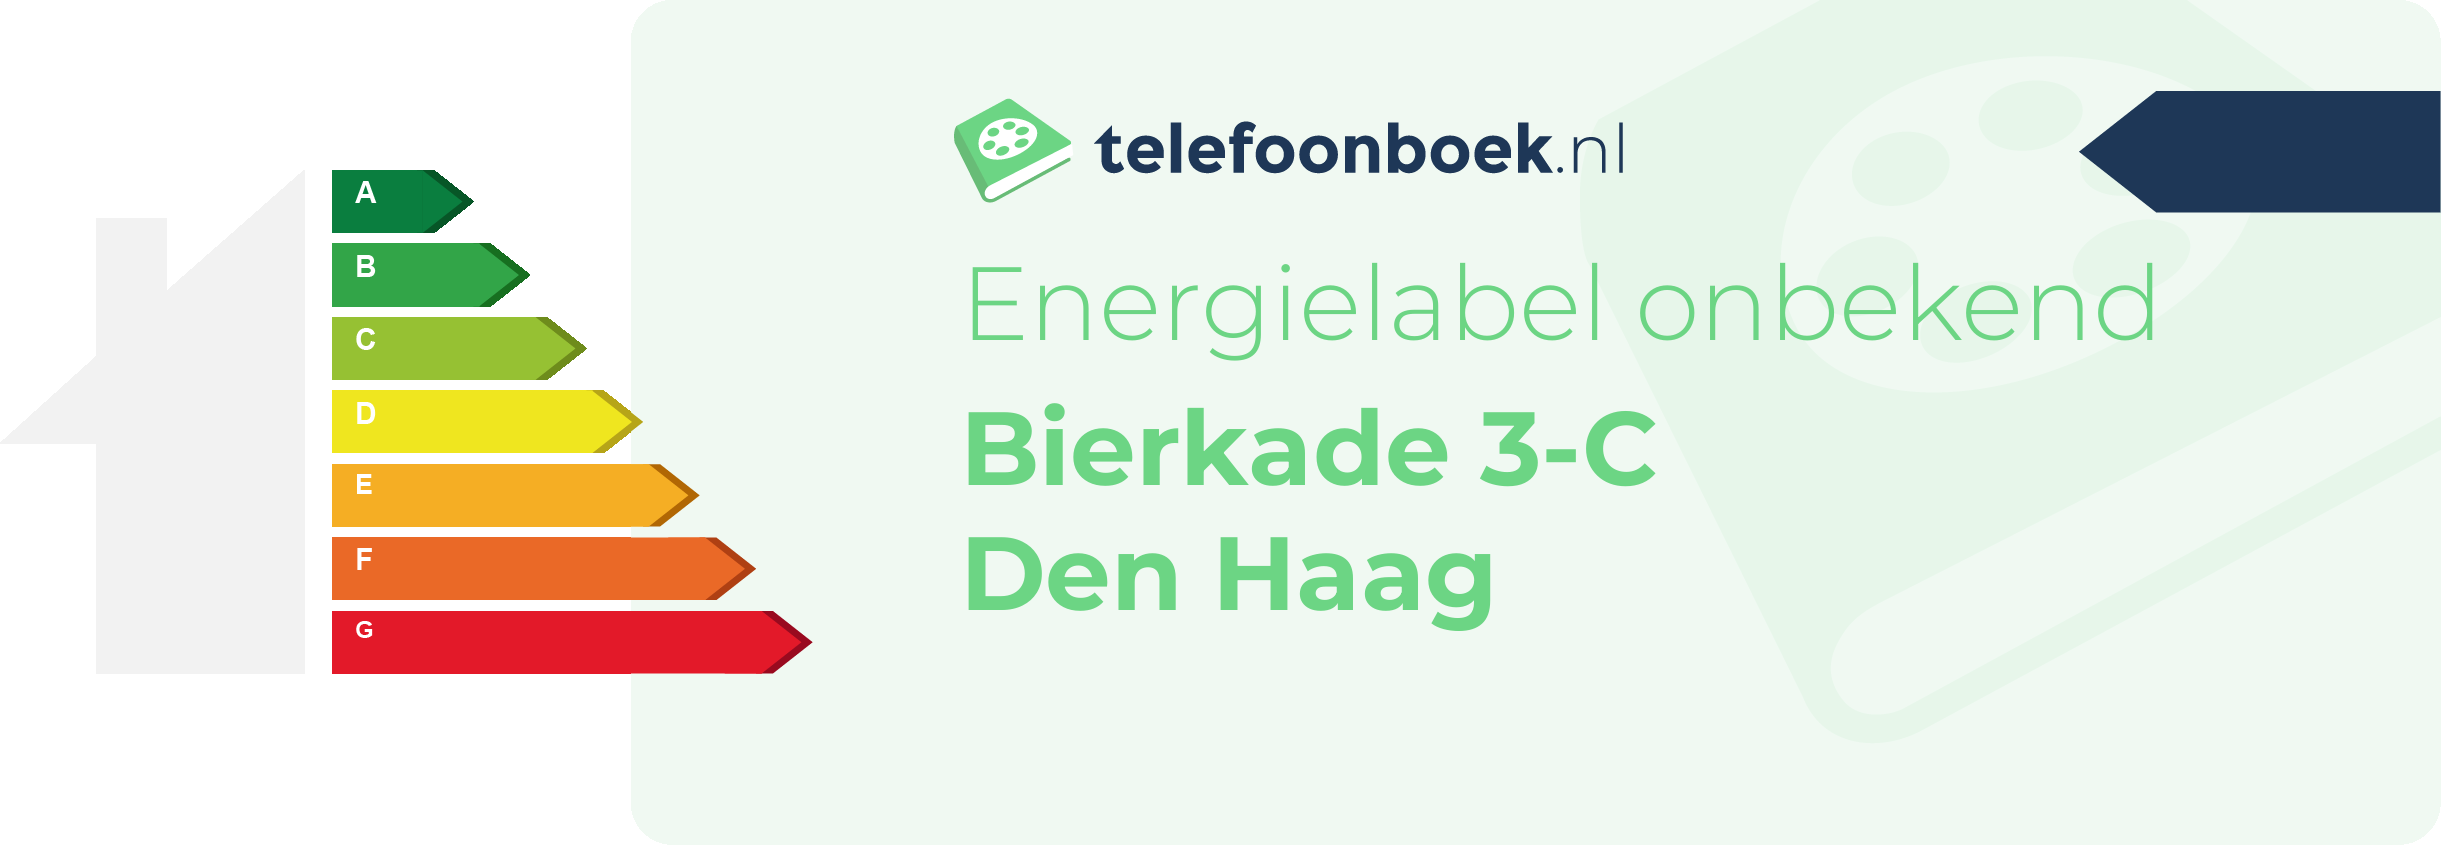 Energielabel Bierkade 3-C Den Haag